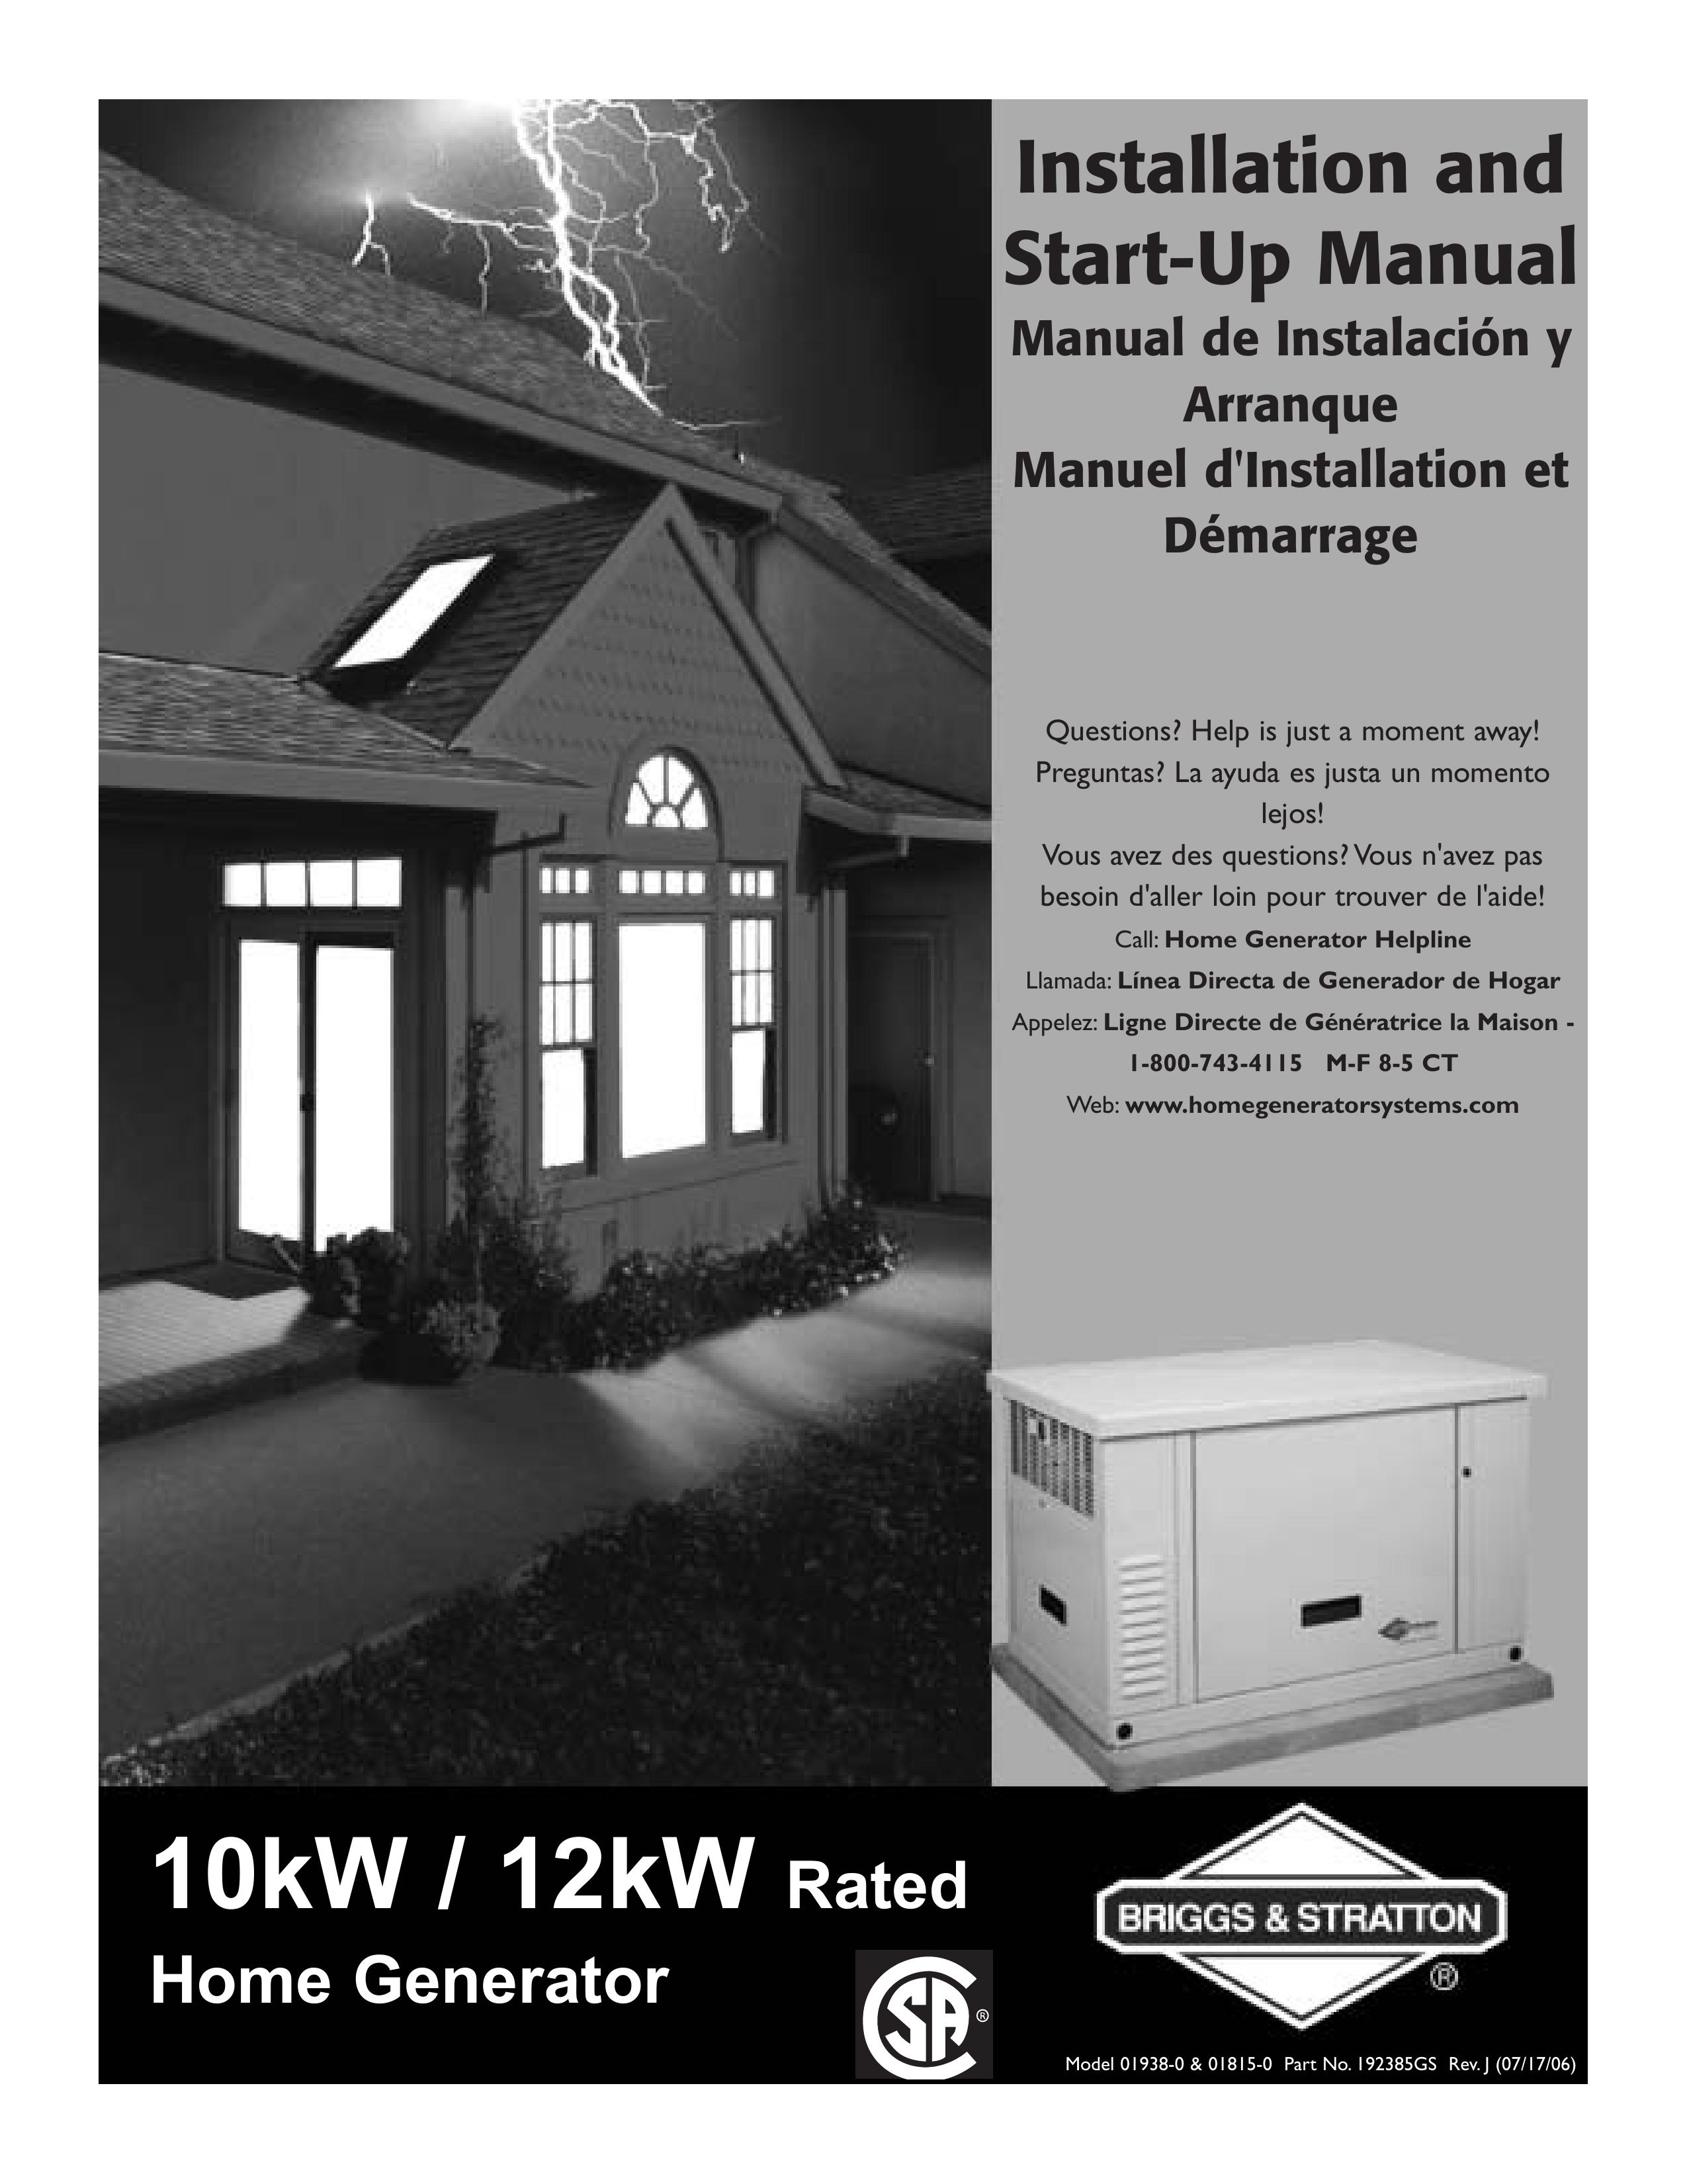 Briggs & Stratton 01815-0 Portable Generator User Manual